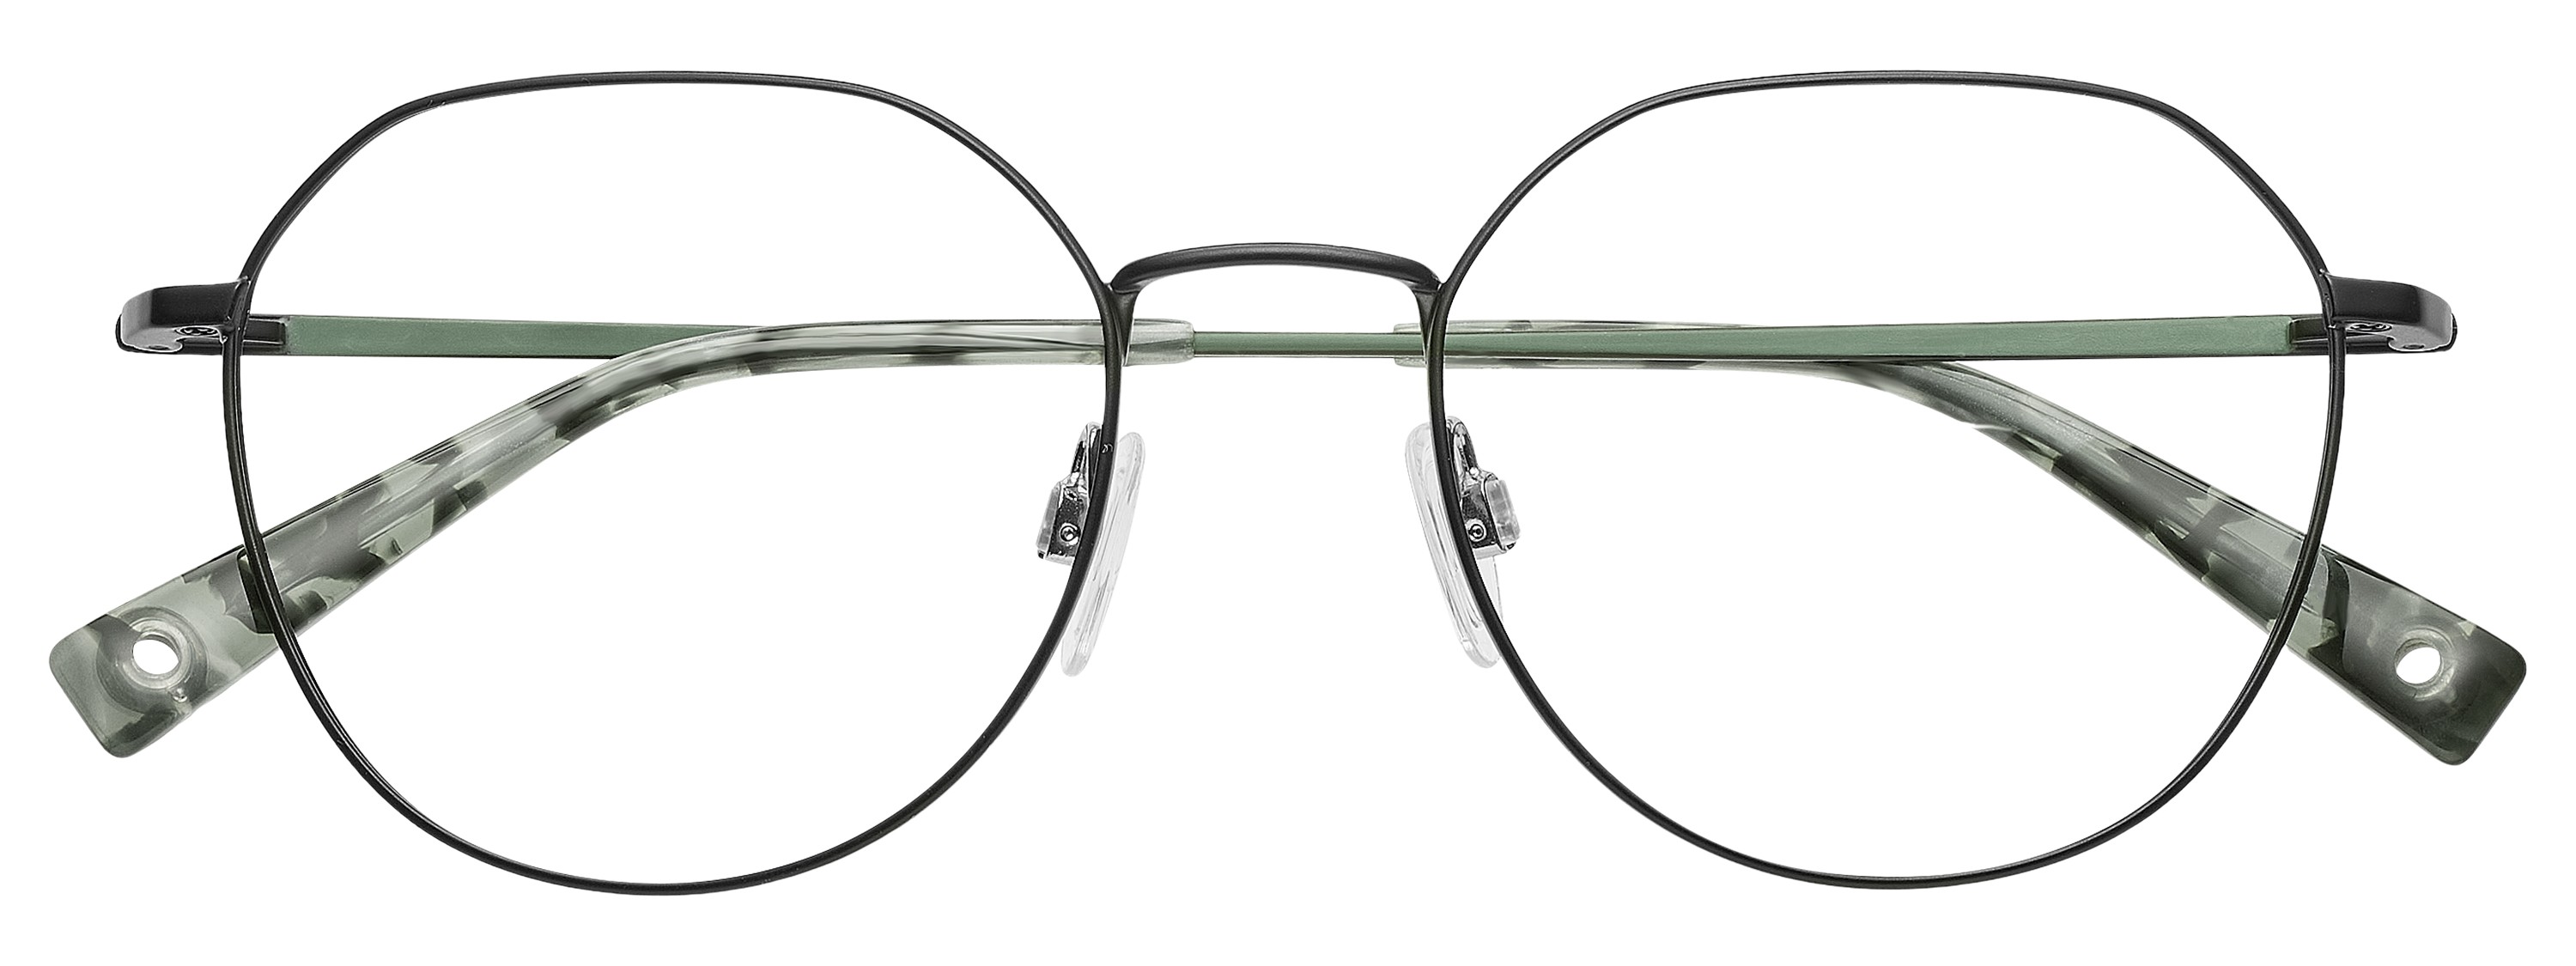 BRENDEL eyewear - 902399-10